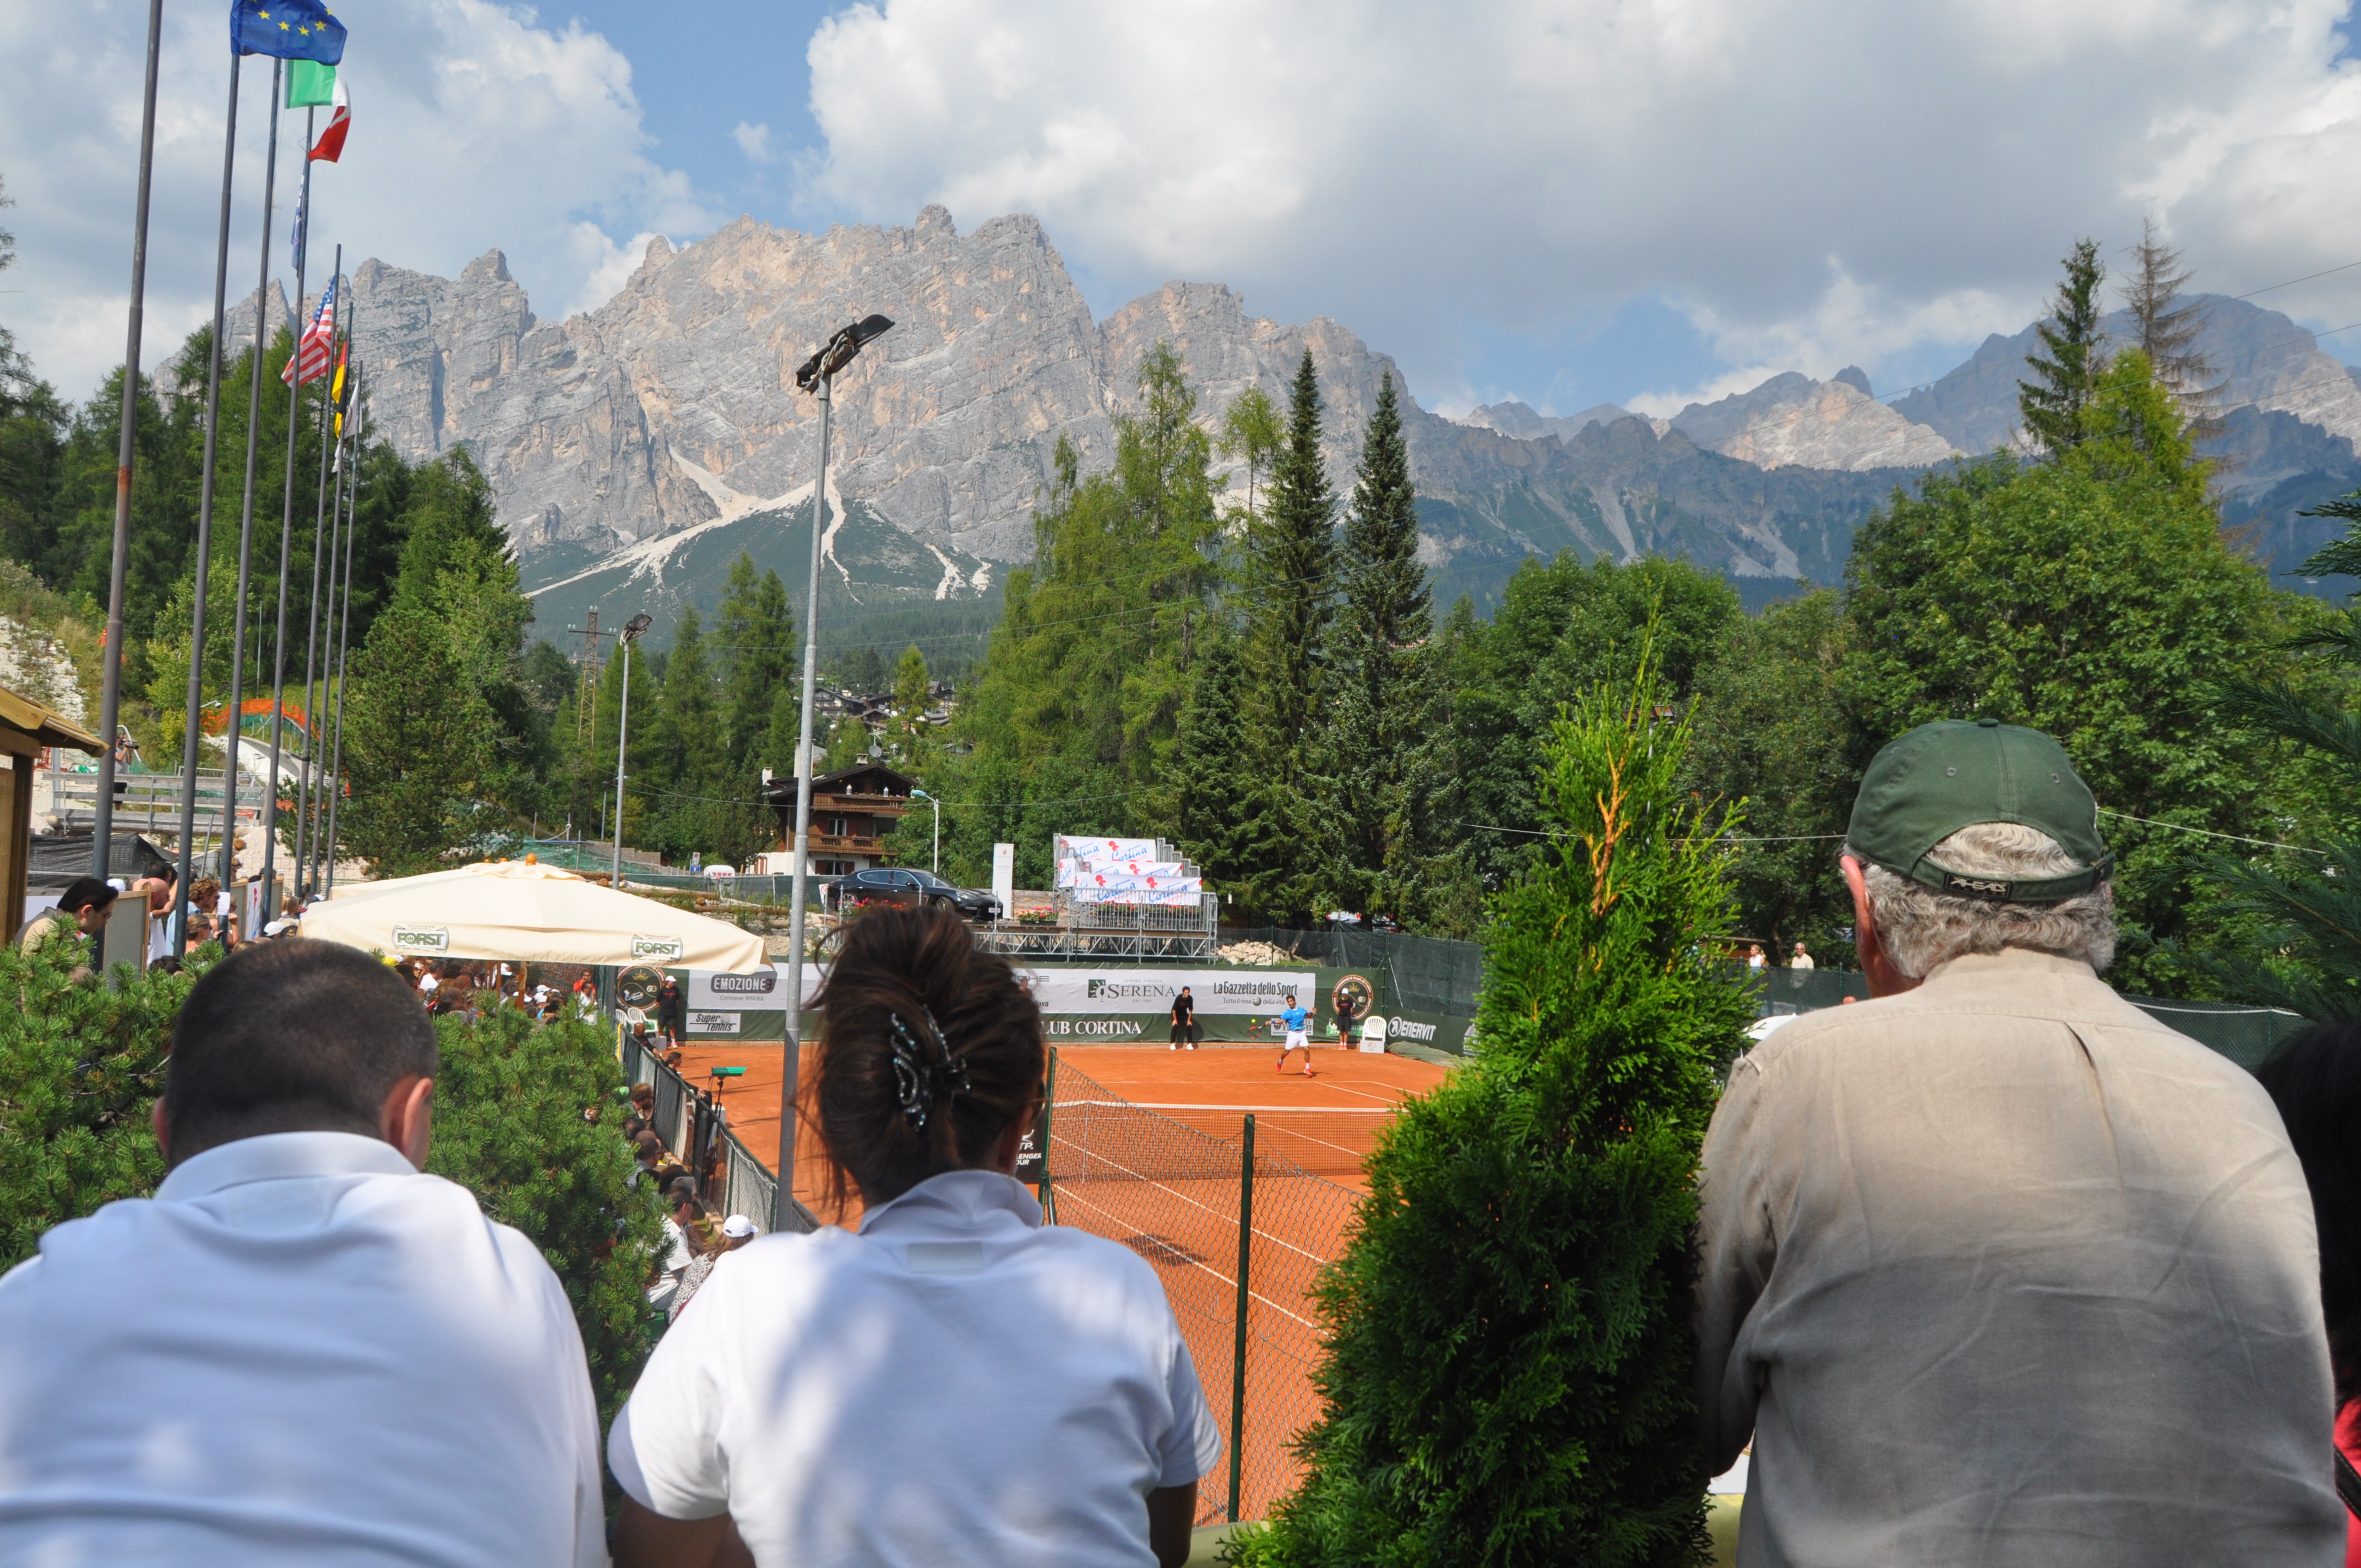 Tennis in montagna